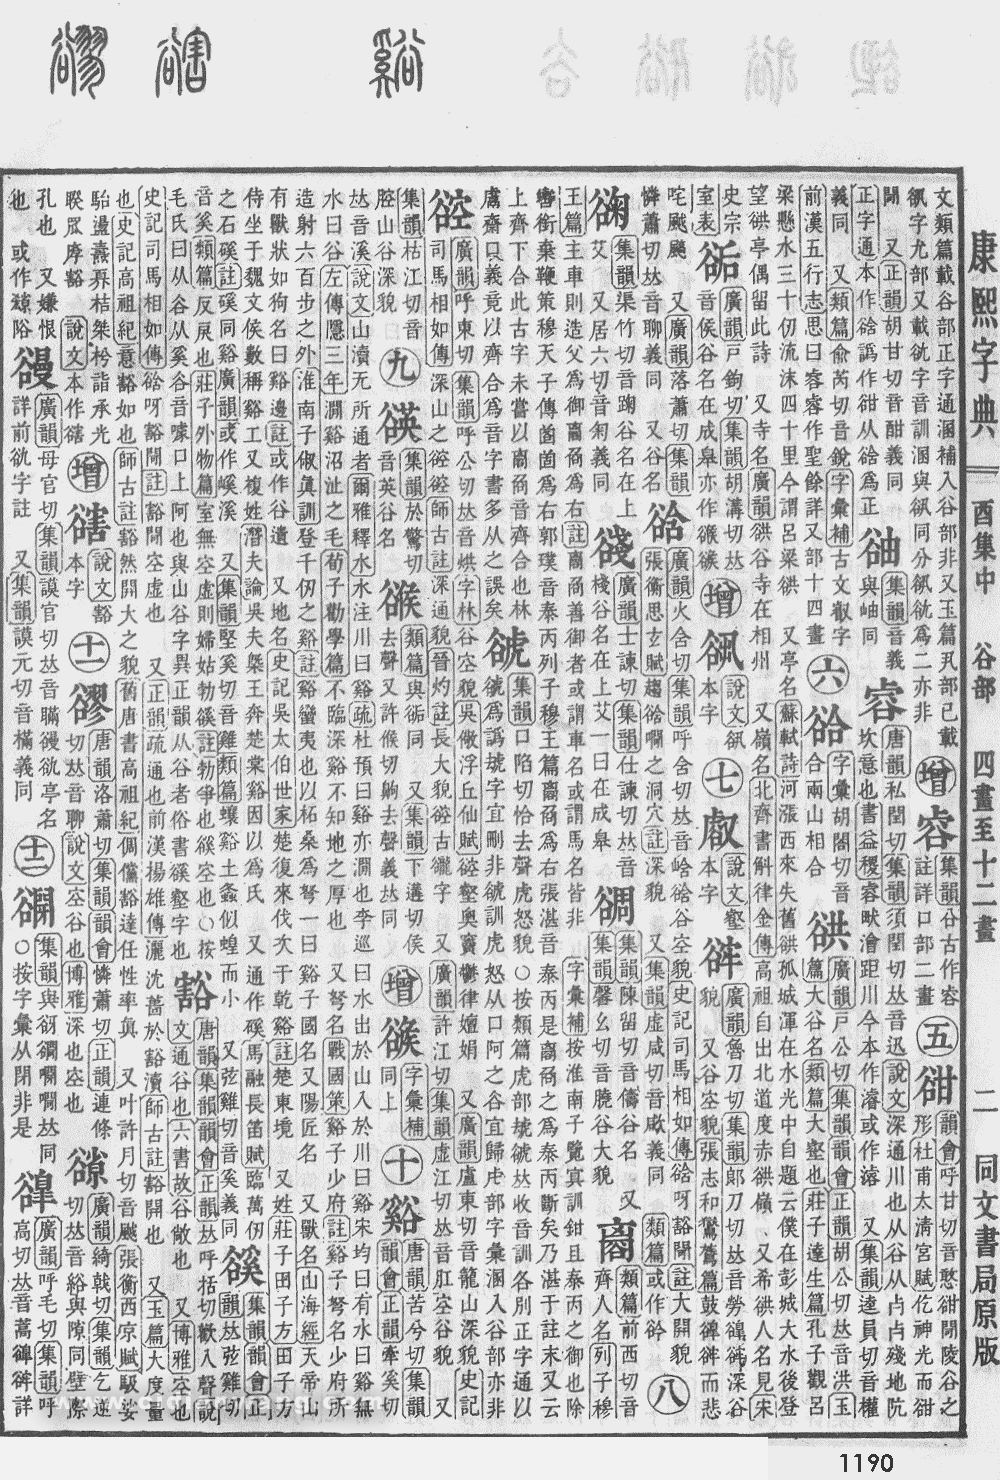 康熙字典掃描版第1190頁